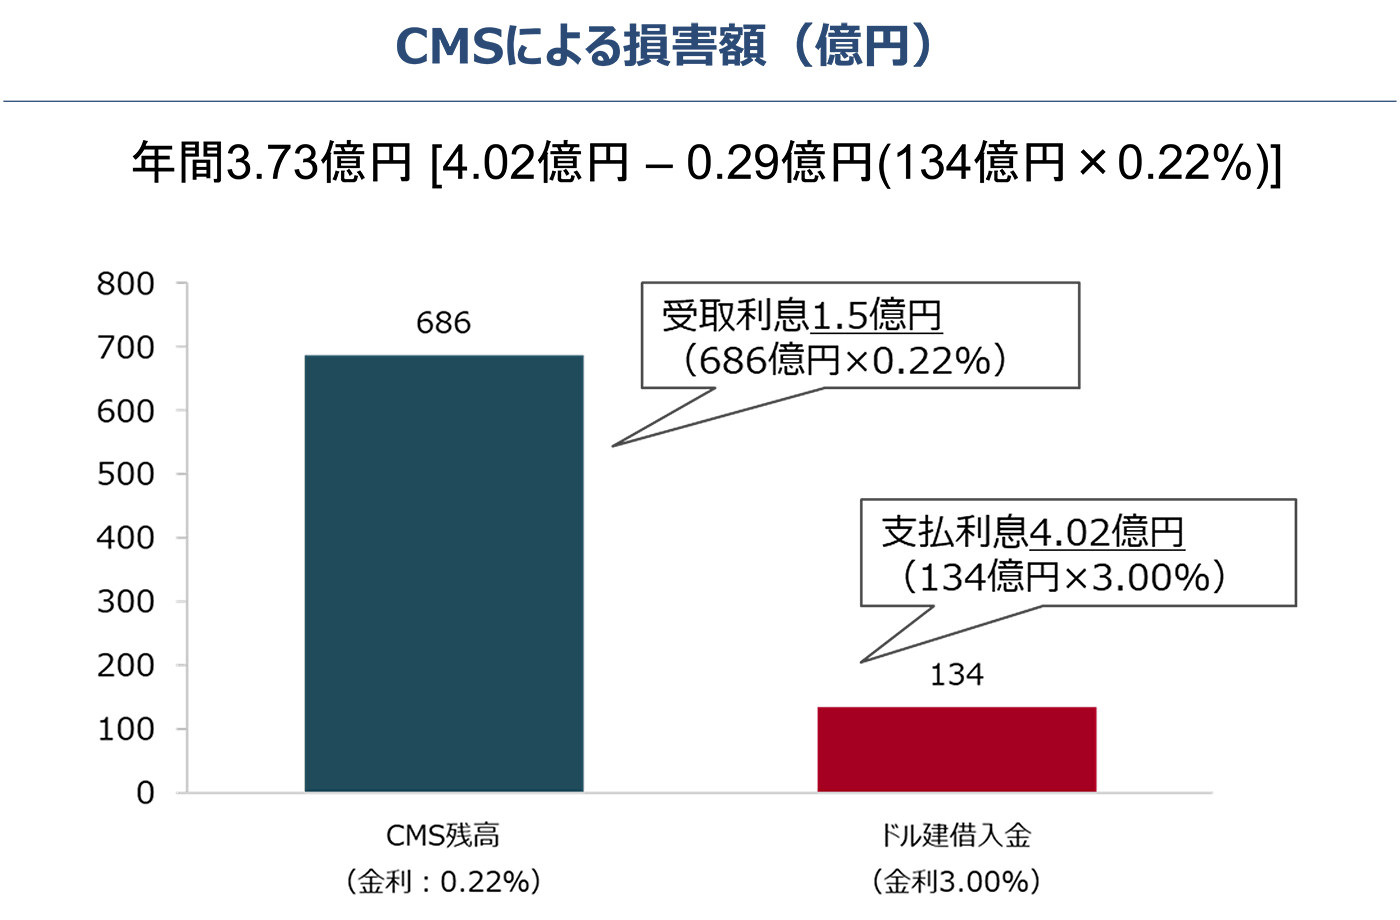 CMSによる損害額（億円）